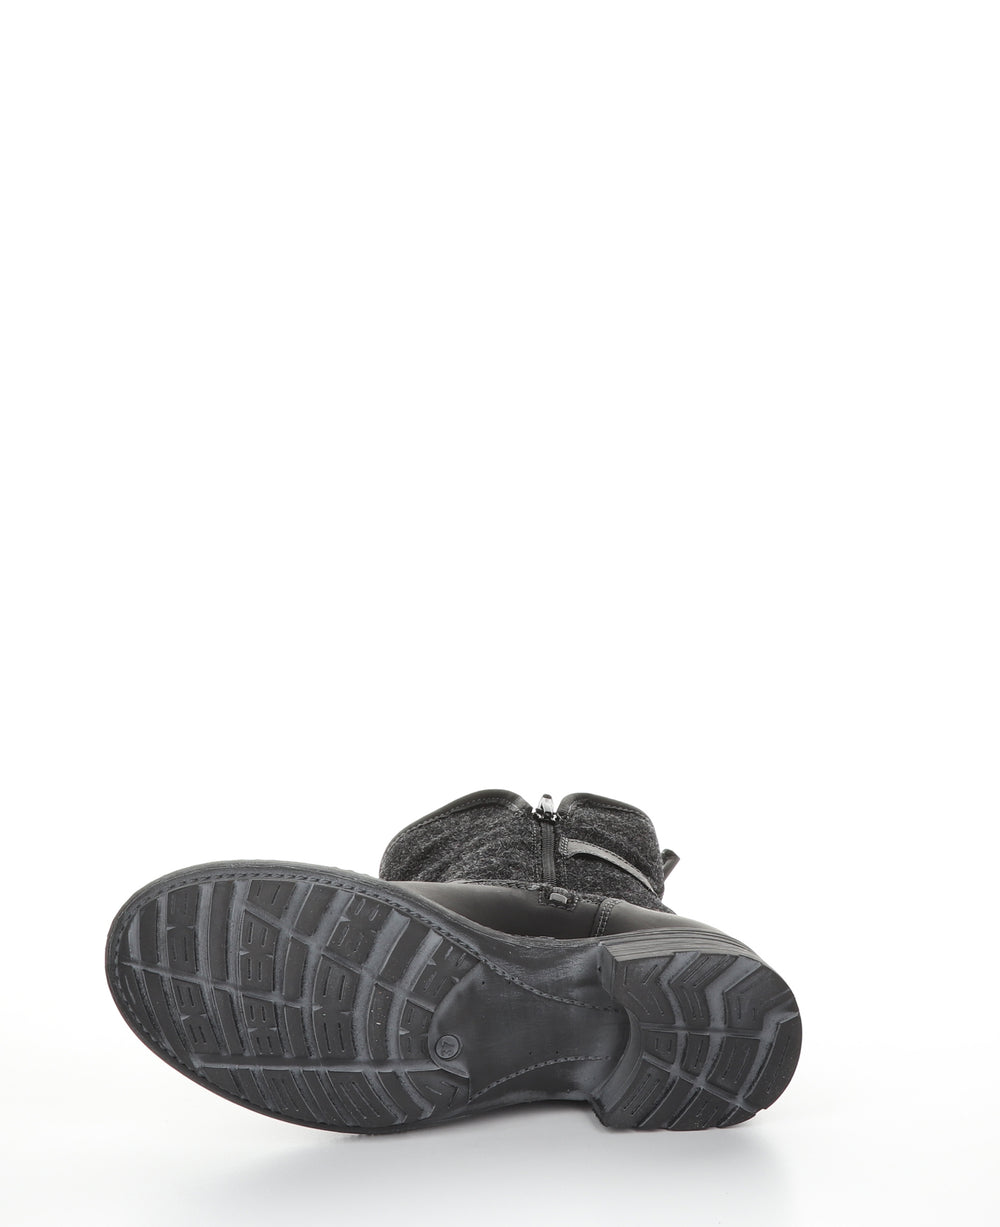 SAINT Black Zip Up Boots|SAINT Bottes avec Fermeture Zippée in Noir